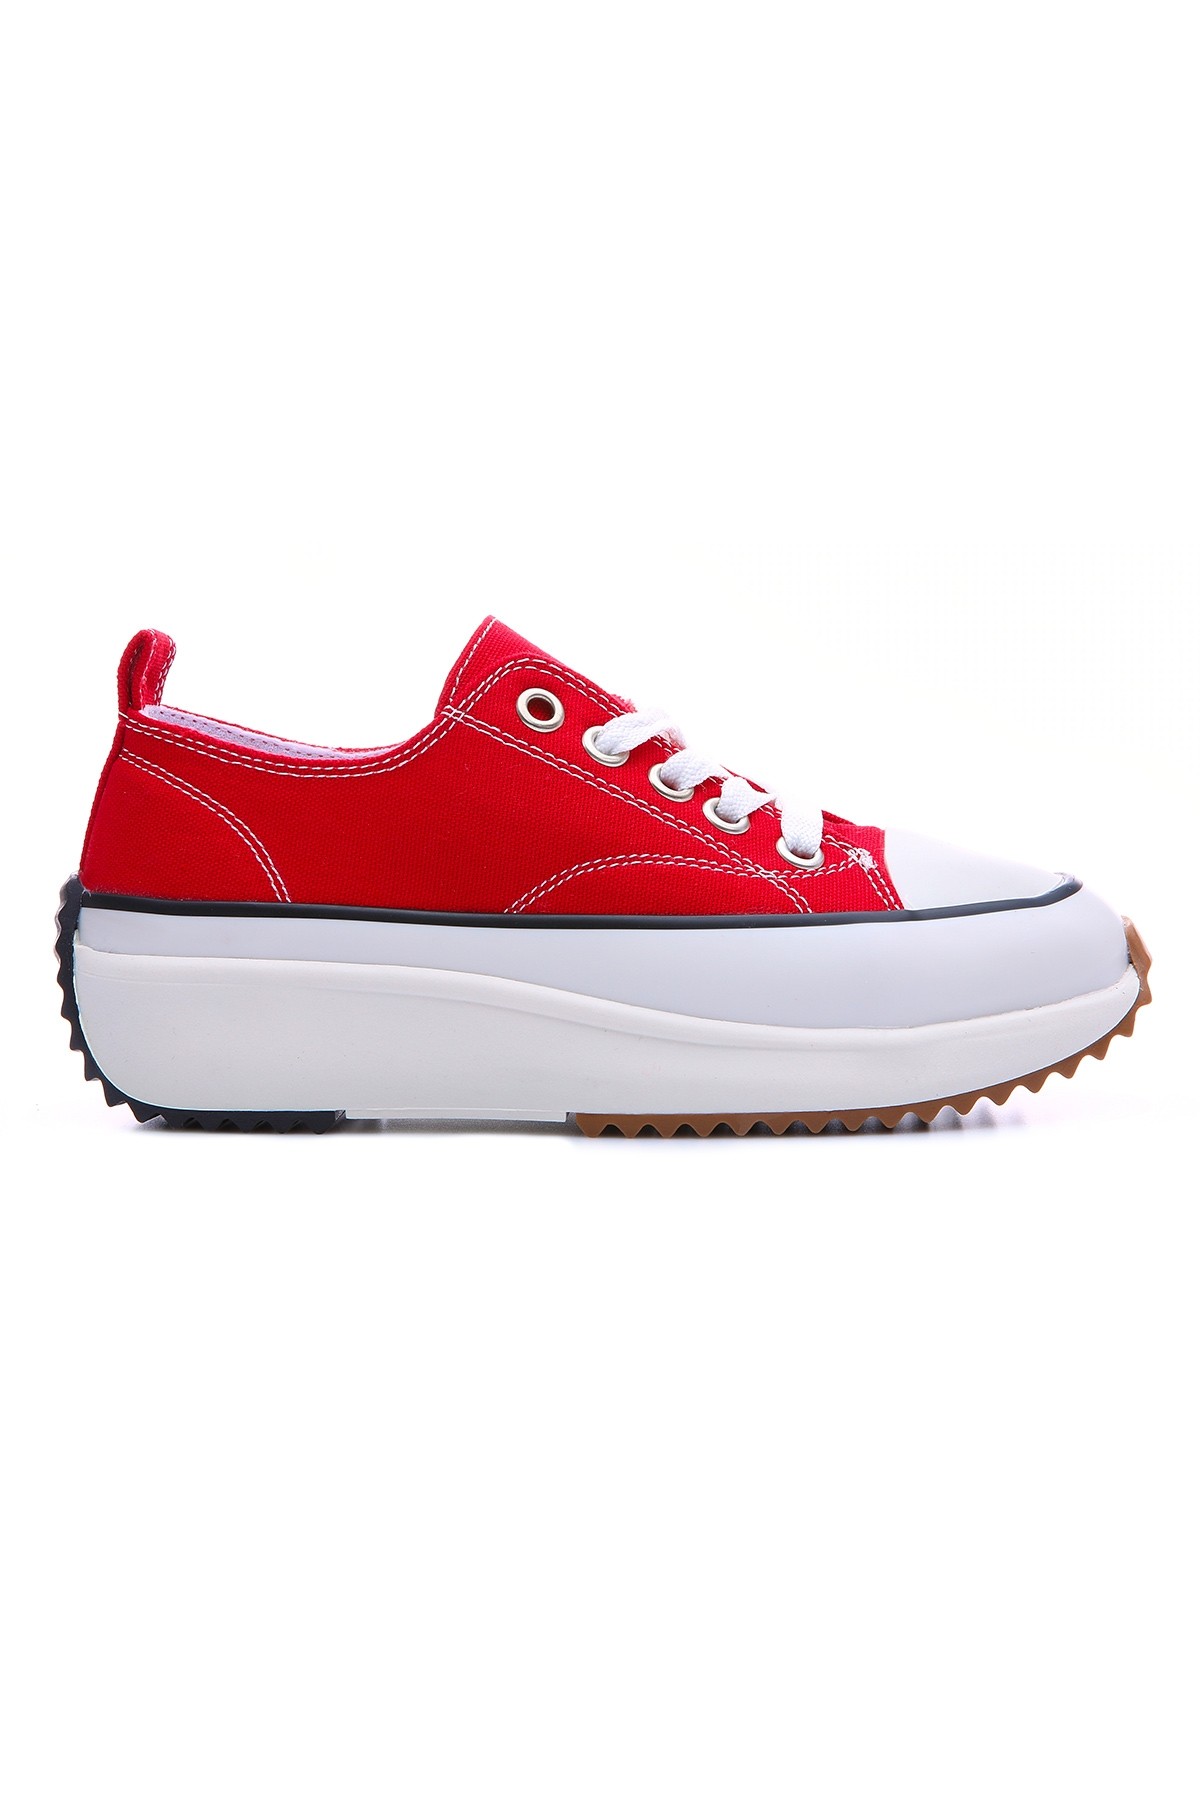 TommyLife - Kırmızı Bağcıklı Yüksek Taban Günlük Kadın Spor Ayakkabı - 89070